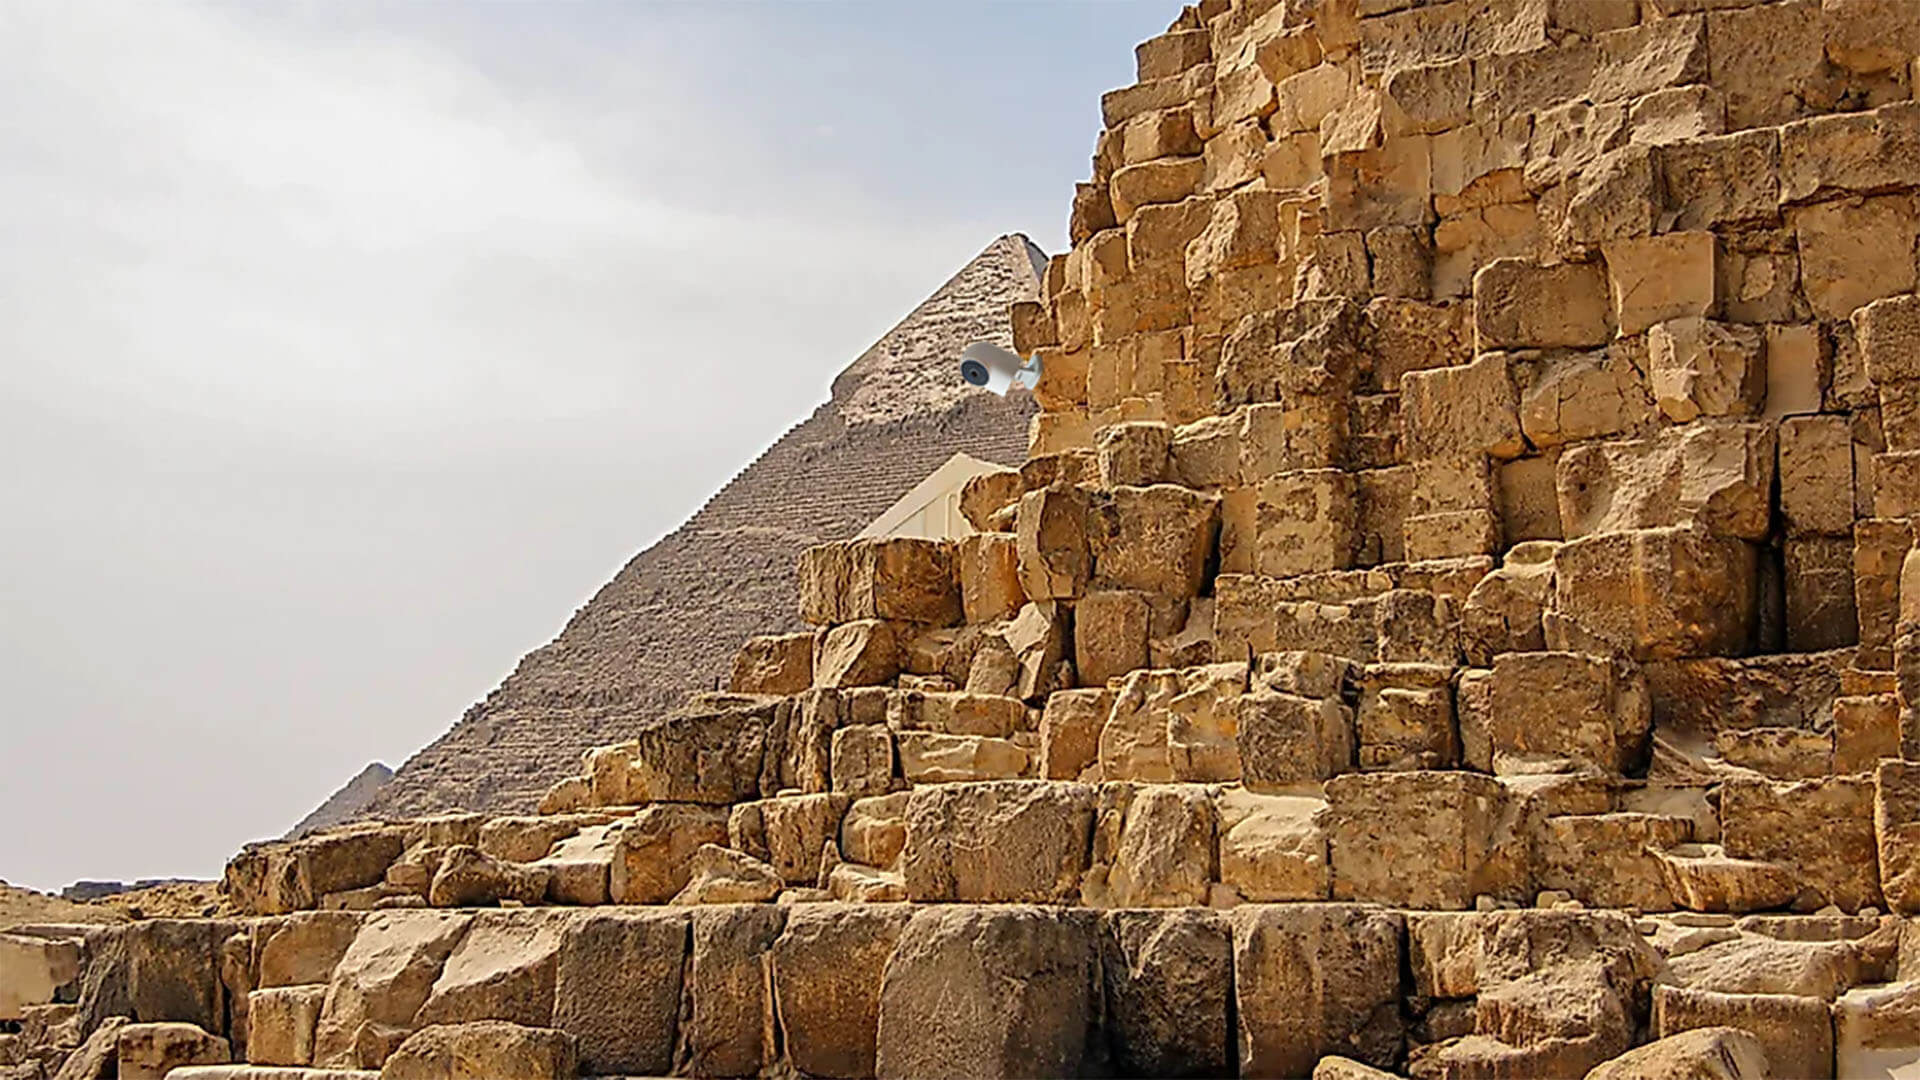 Aqara G2H Camera at the Great Pyramid of Giza